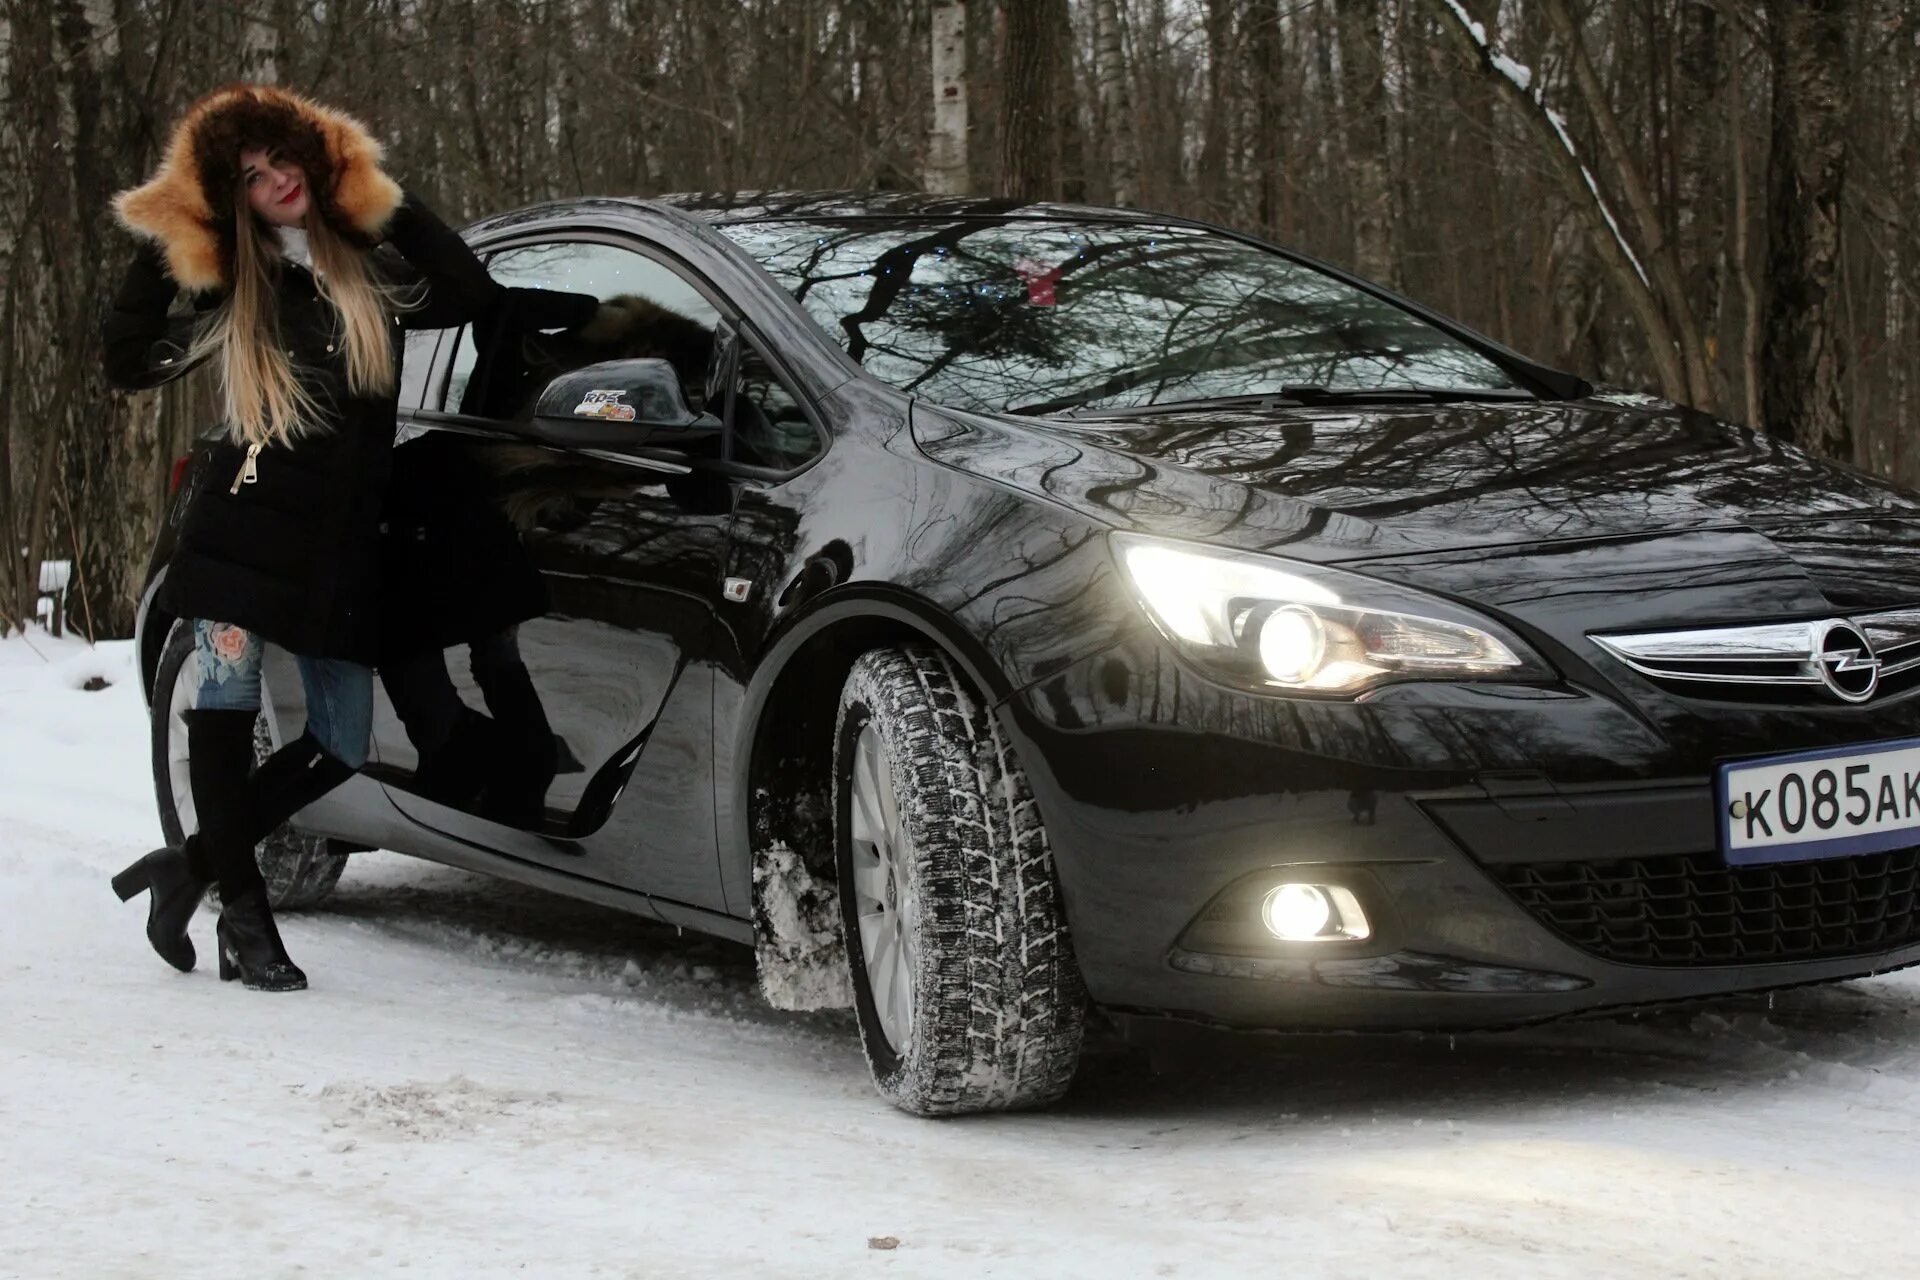 Фото около машины. Машины Хорошавина. Девушка в автомобиле зимой. Девушка около машины зимой. Девушка машина зимой красивая.